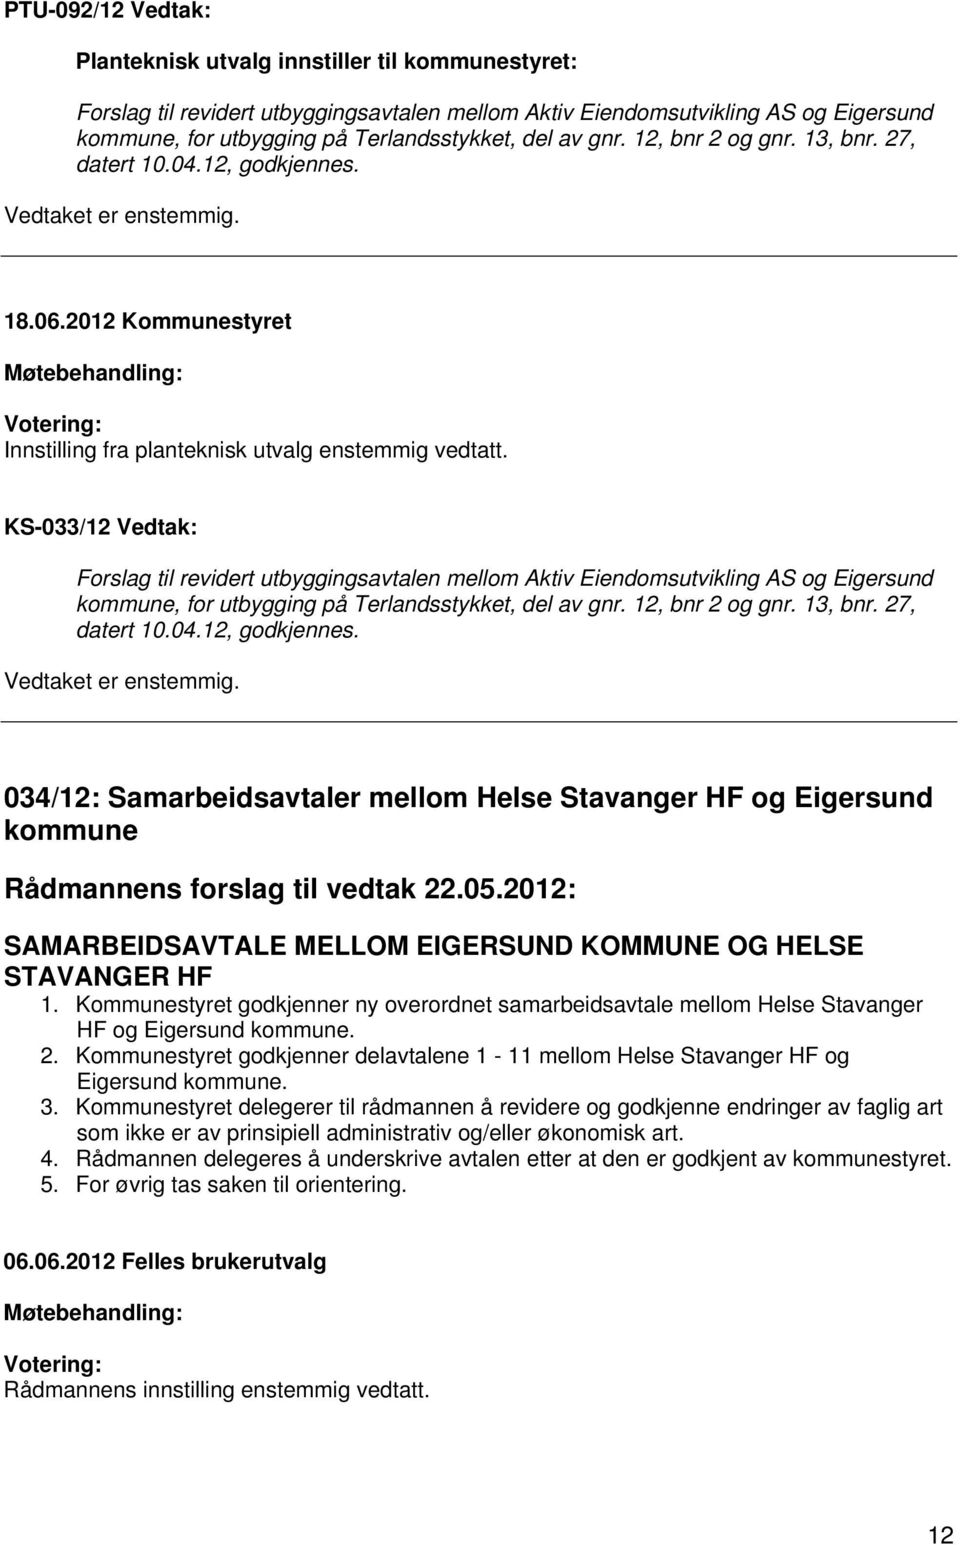 KS-033/12 Vedtak: Forslag til revidert utbyggingsavtalen mellom Aktiv Eiendomsutvikling AS og Eigersund kommune, for utbygging på Terlandsstykket, del av gnr. 12, bnr 2 og gnr. 13, bnr. 27, datert 10.